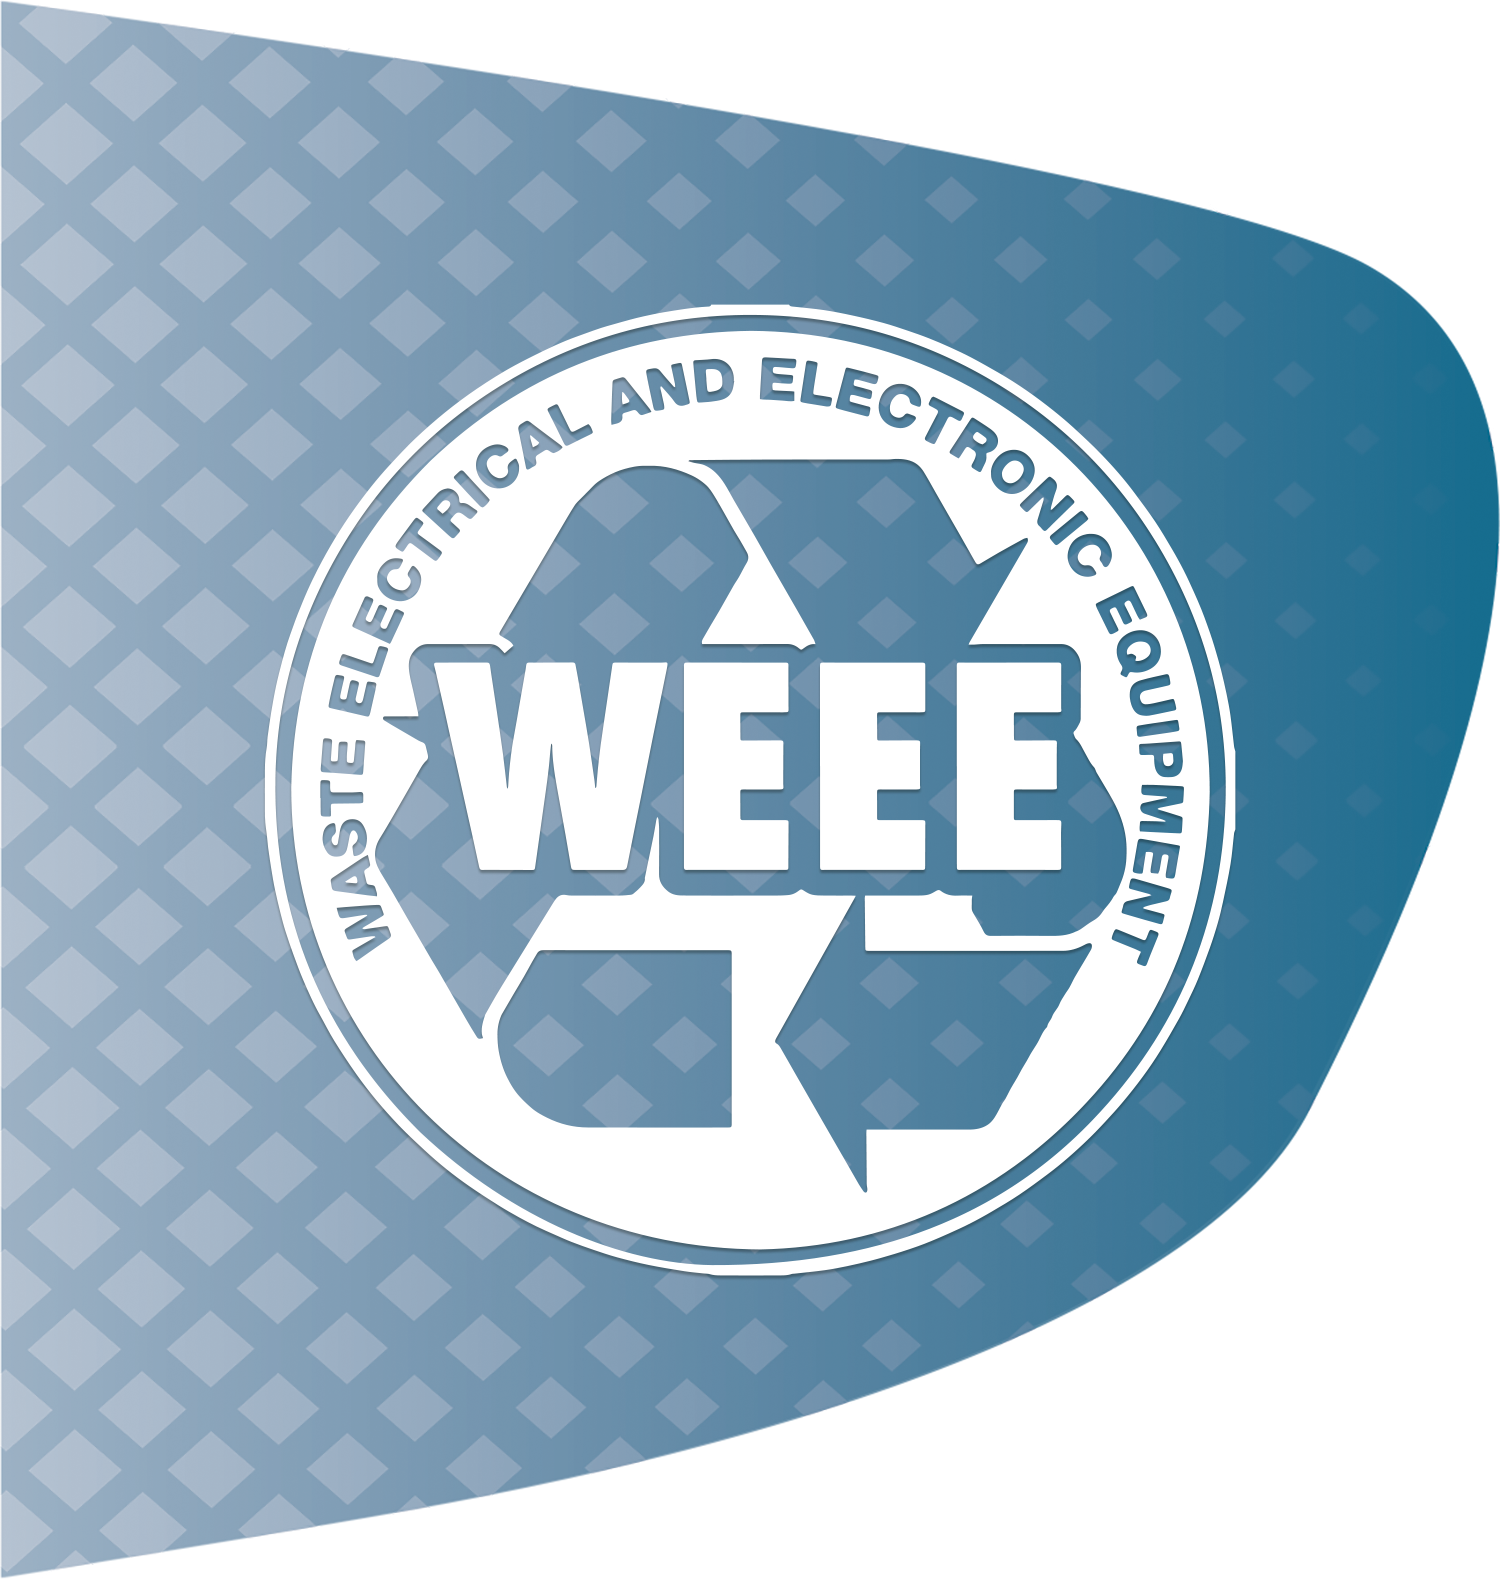 WEEE Logo